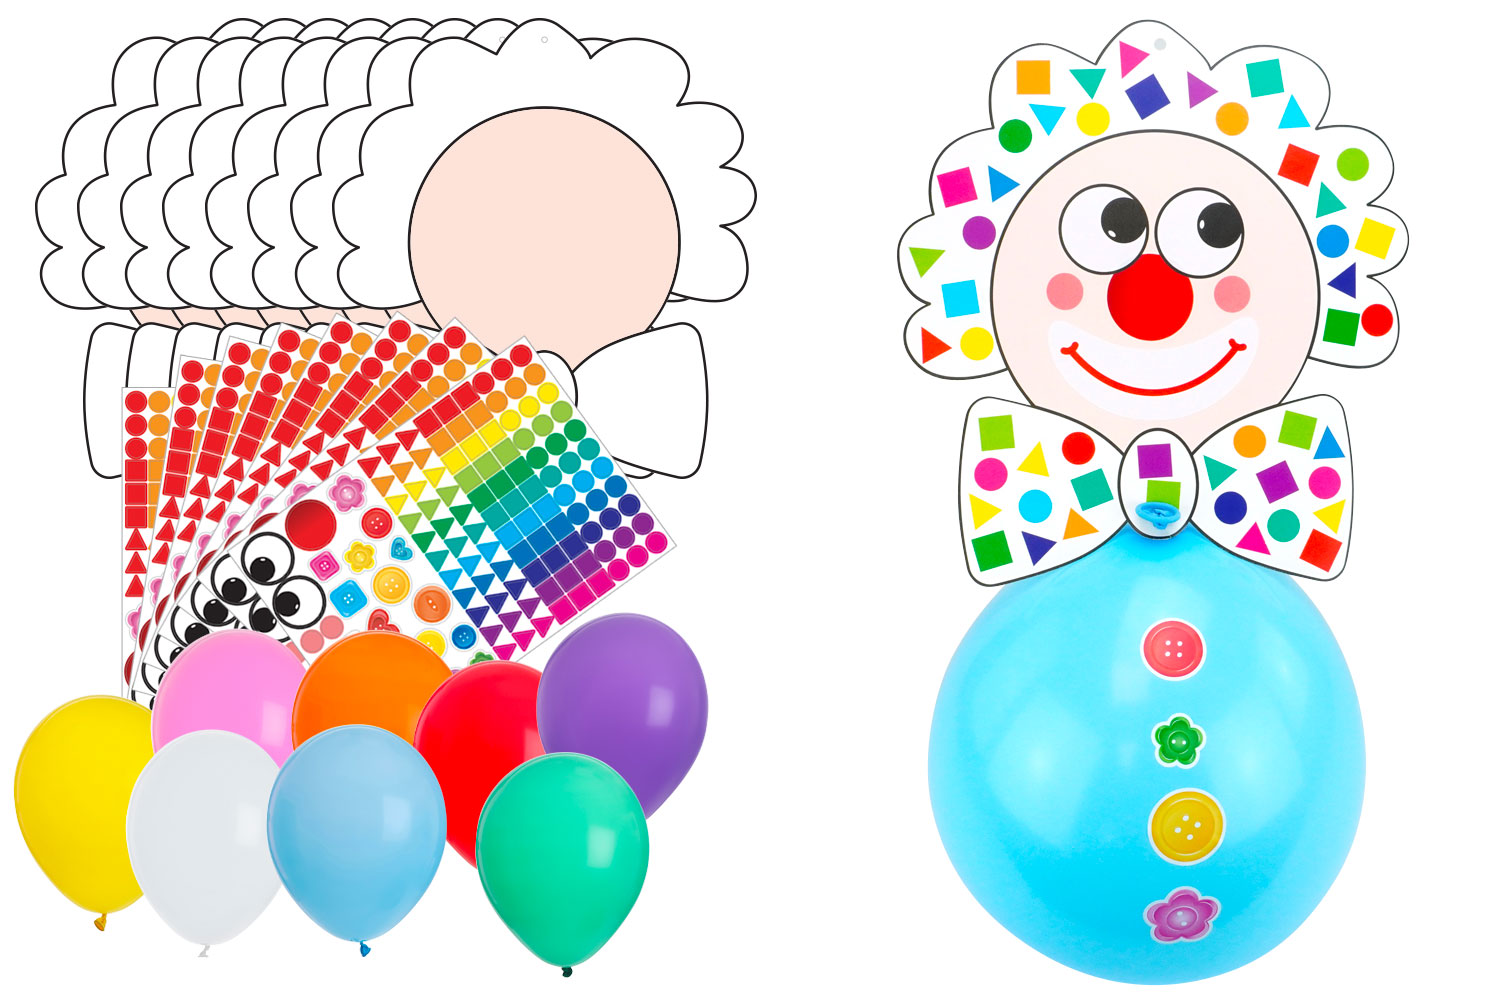 Ballon aluminium chiffre rouge 1 m : Deguise-toi, achat de Decoration /  Animation